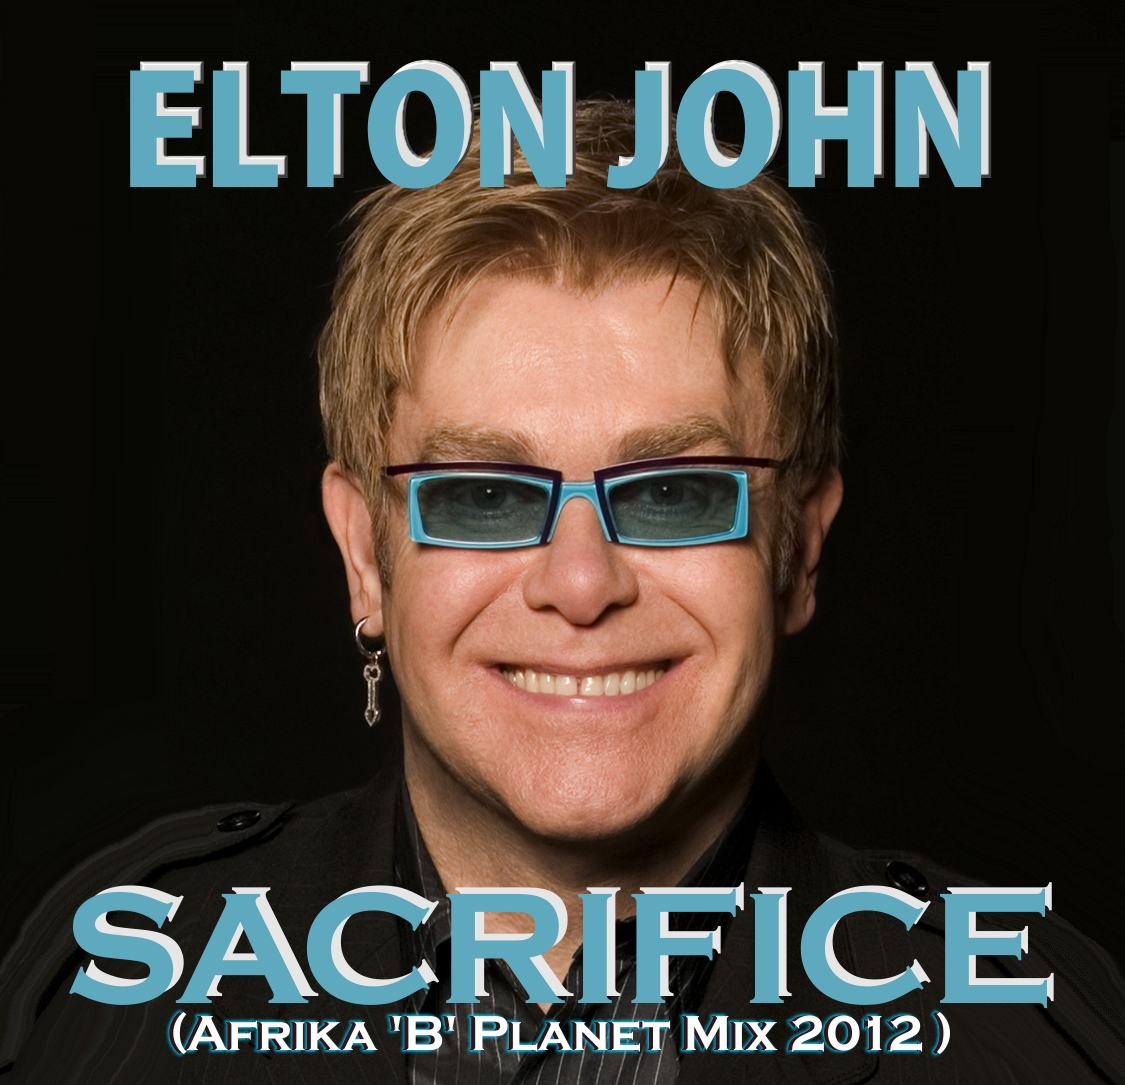 Элтон джон сакрифайс. Элтон Джон 1989. Сакрифайс Элтон. Элтон Джон Sacrifice. Elton John Sacrifice 1989.